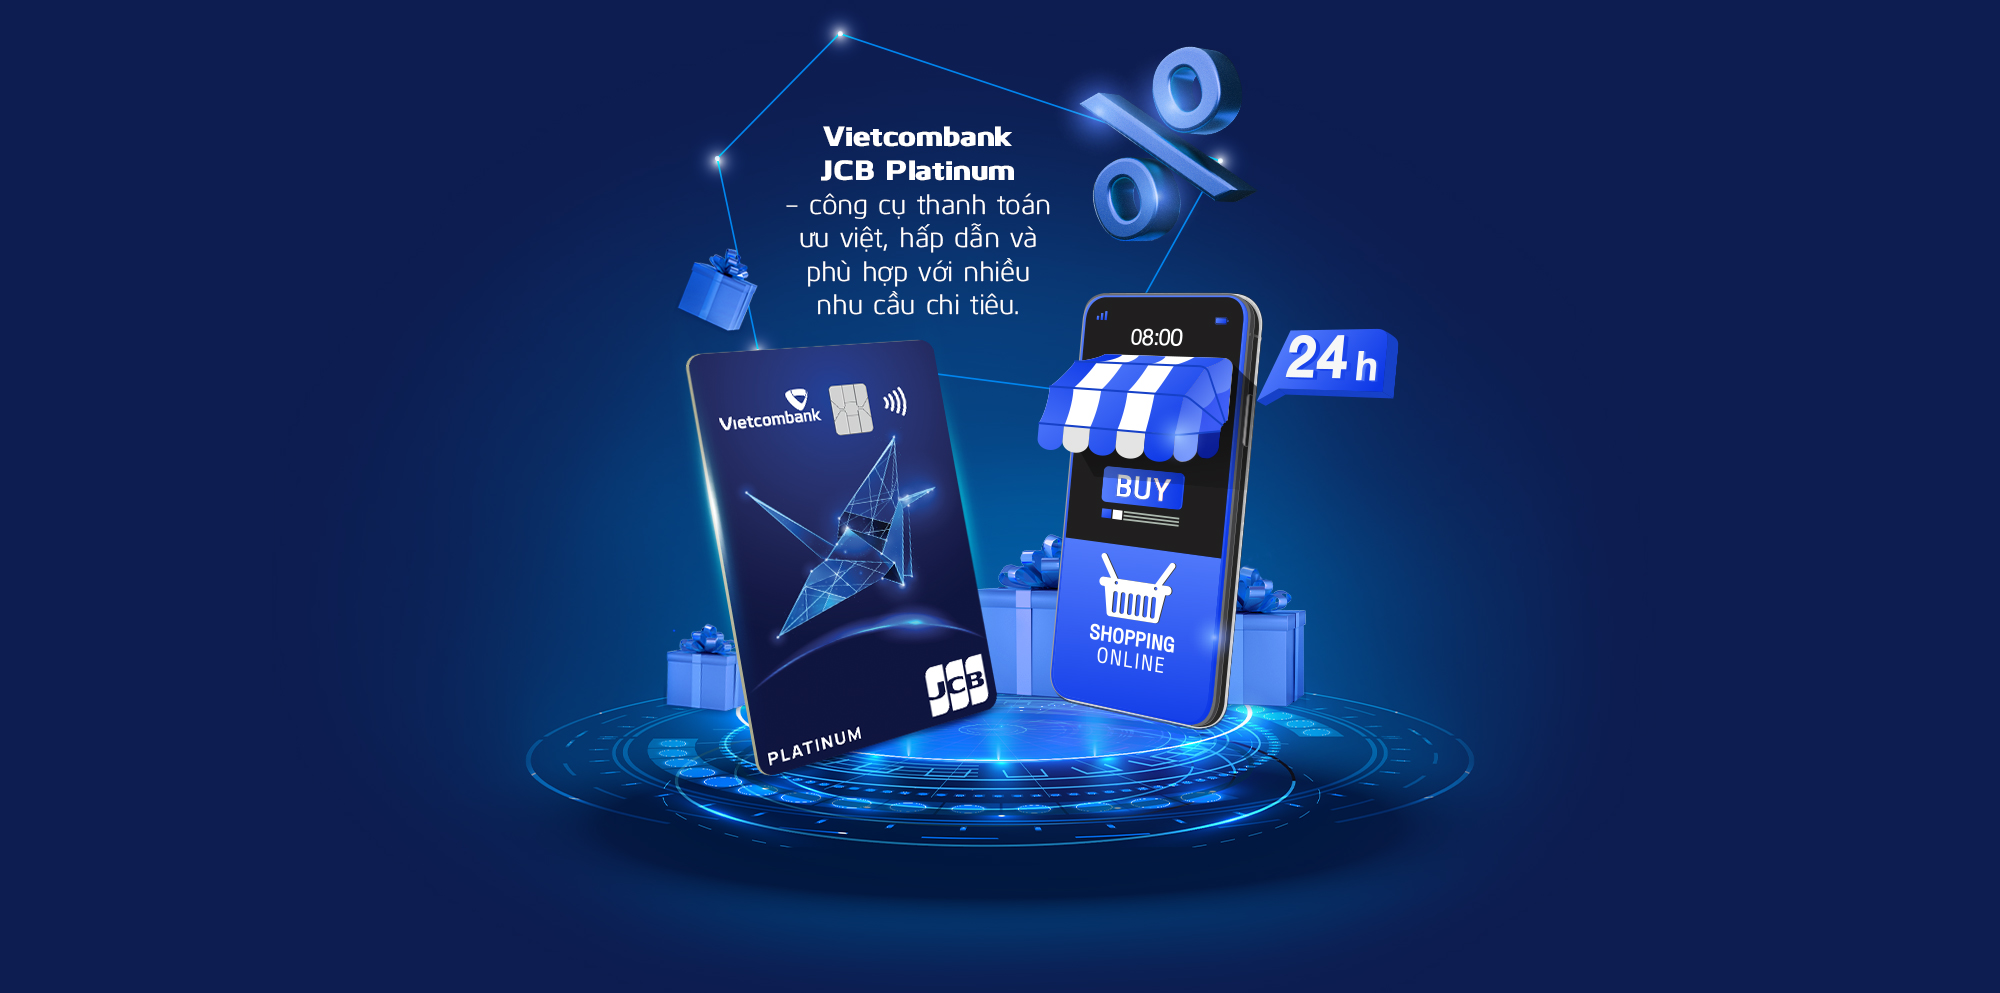 Nhận ngàn ưu đãi với thẻ tín dụng quốc tế Vietcombank JCB Platinum - Ảnh 10.